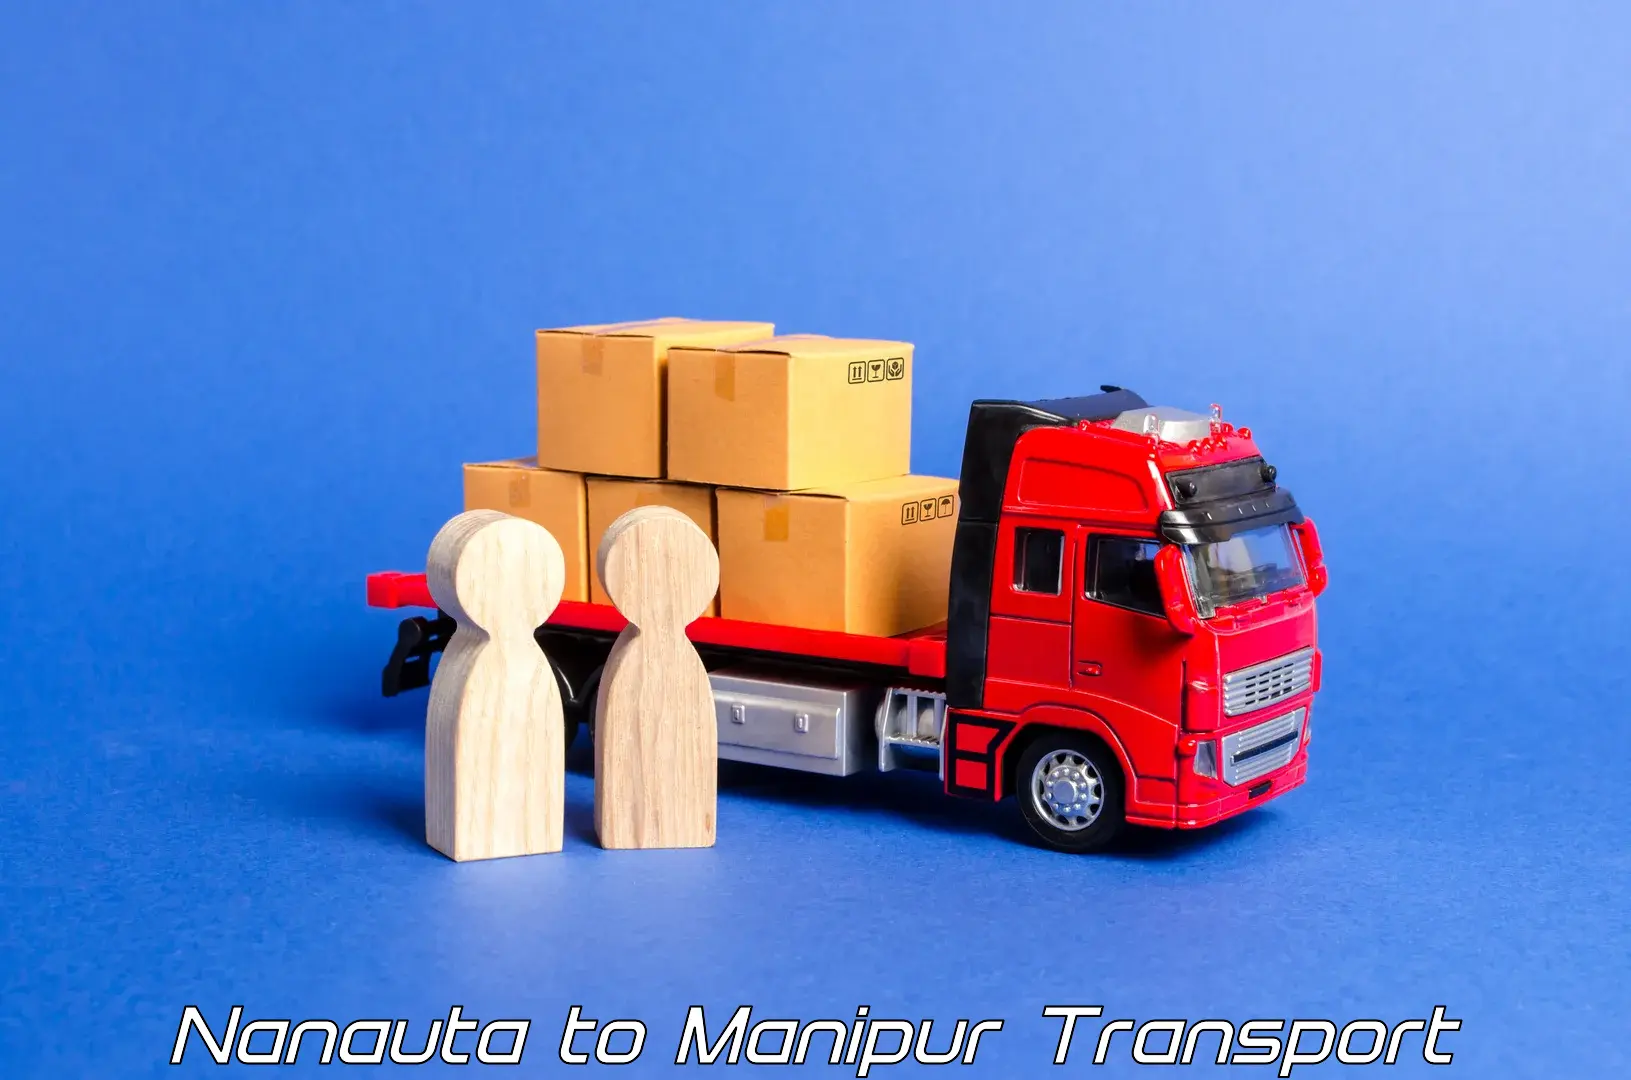 Cargo transportation services Nanauta to Tadubi